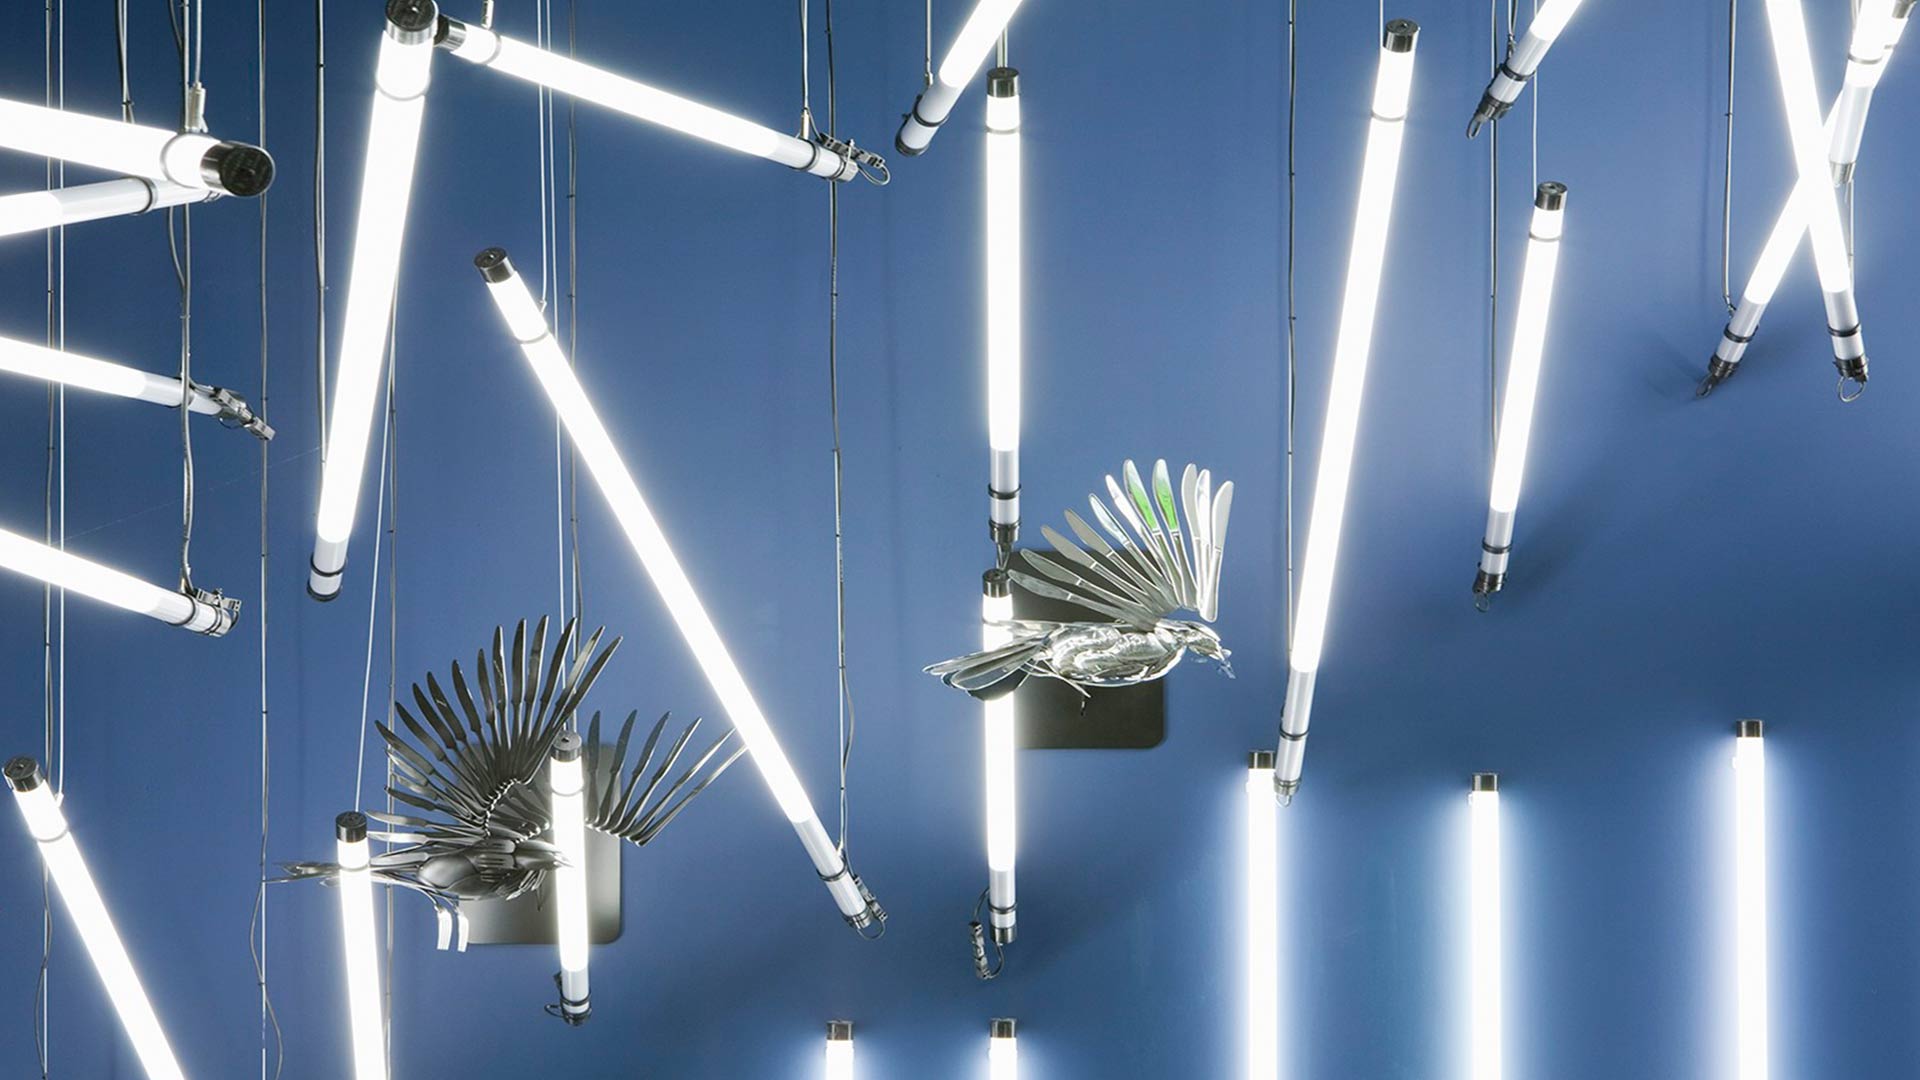 Light Sculpture Energy Efficient Lamps Cutlery Shaped - Sculptural Lighting Design Lamp - HD Wallpaper 